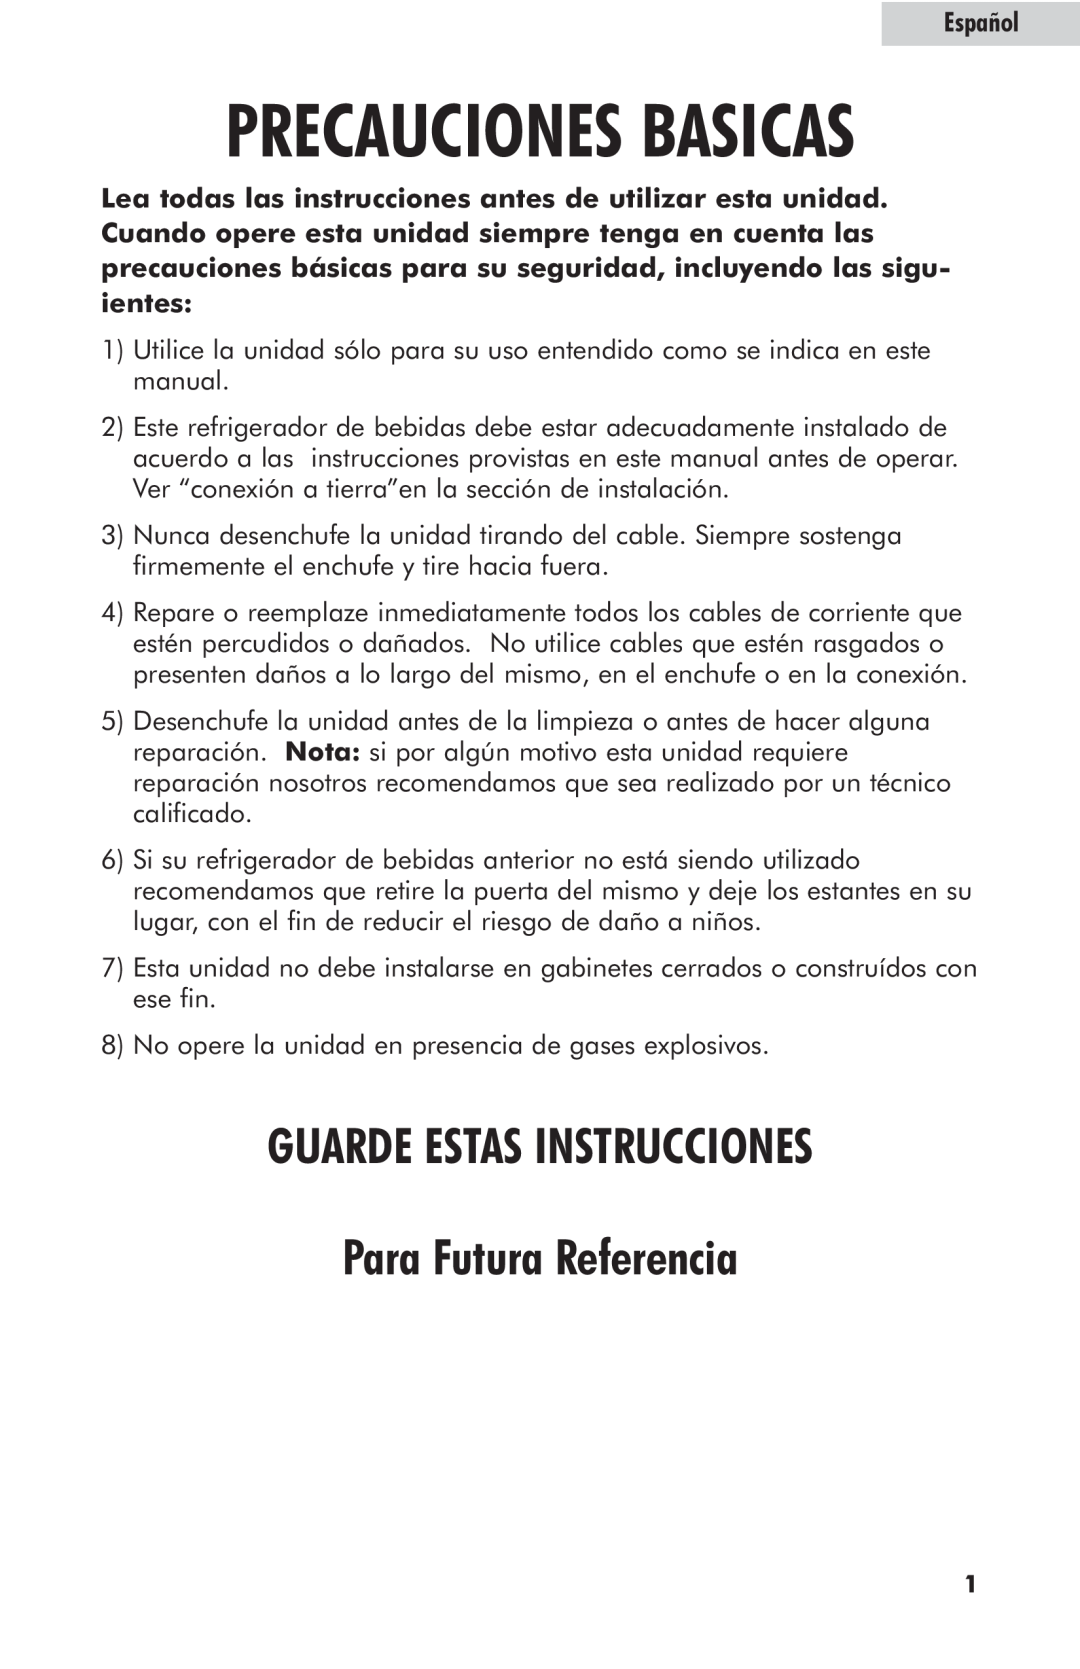 Haier hc125fvs user manual Precauciones Basicas, GUARDE ESTAS INSTRUCCIONES Para Futura Referencia, Español 